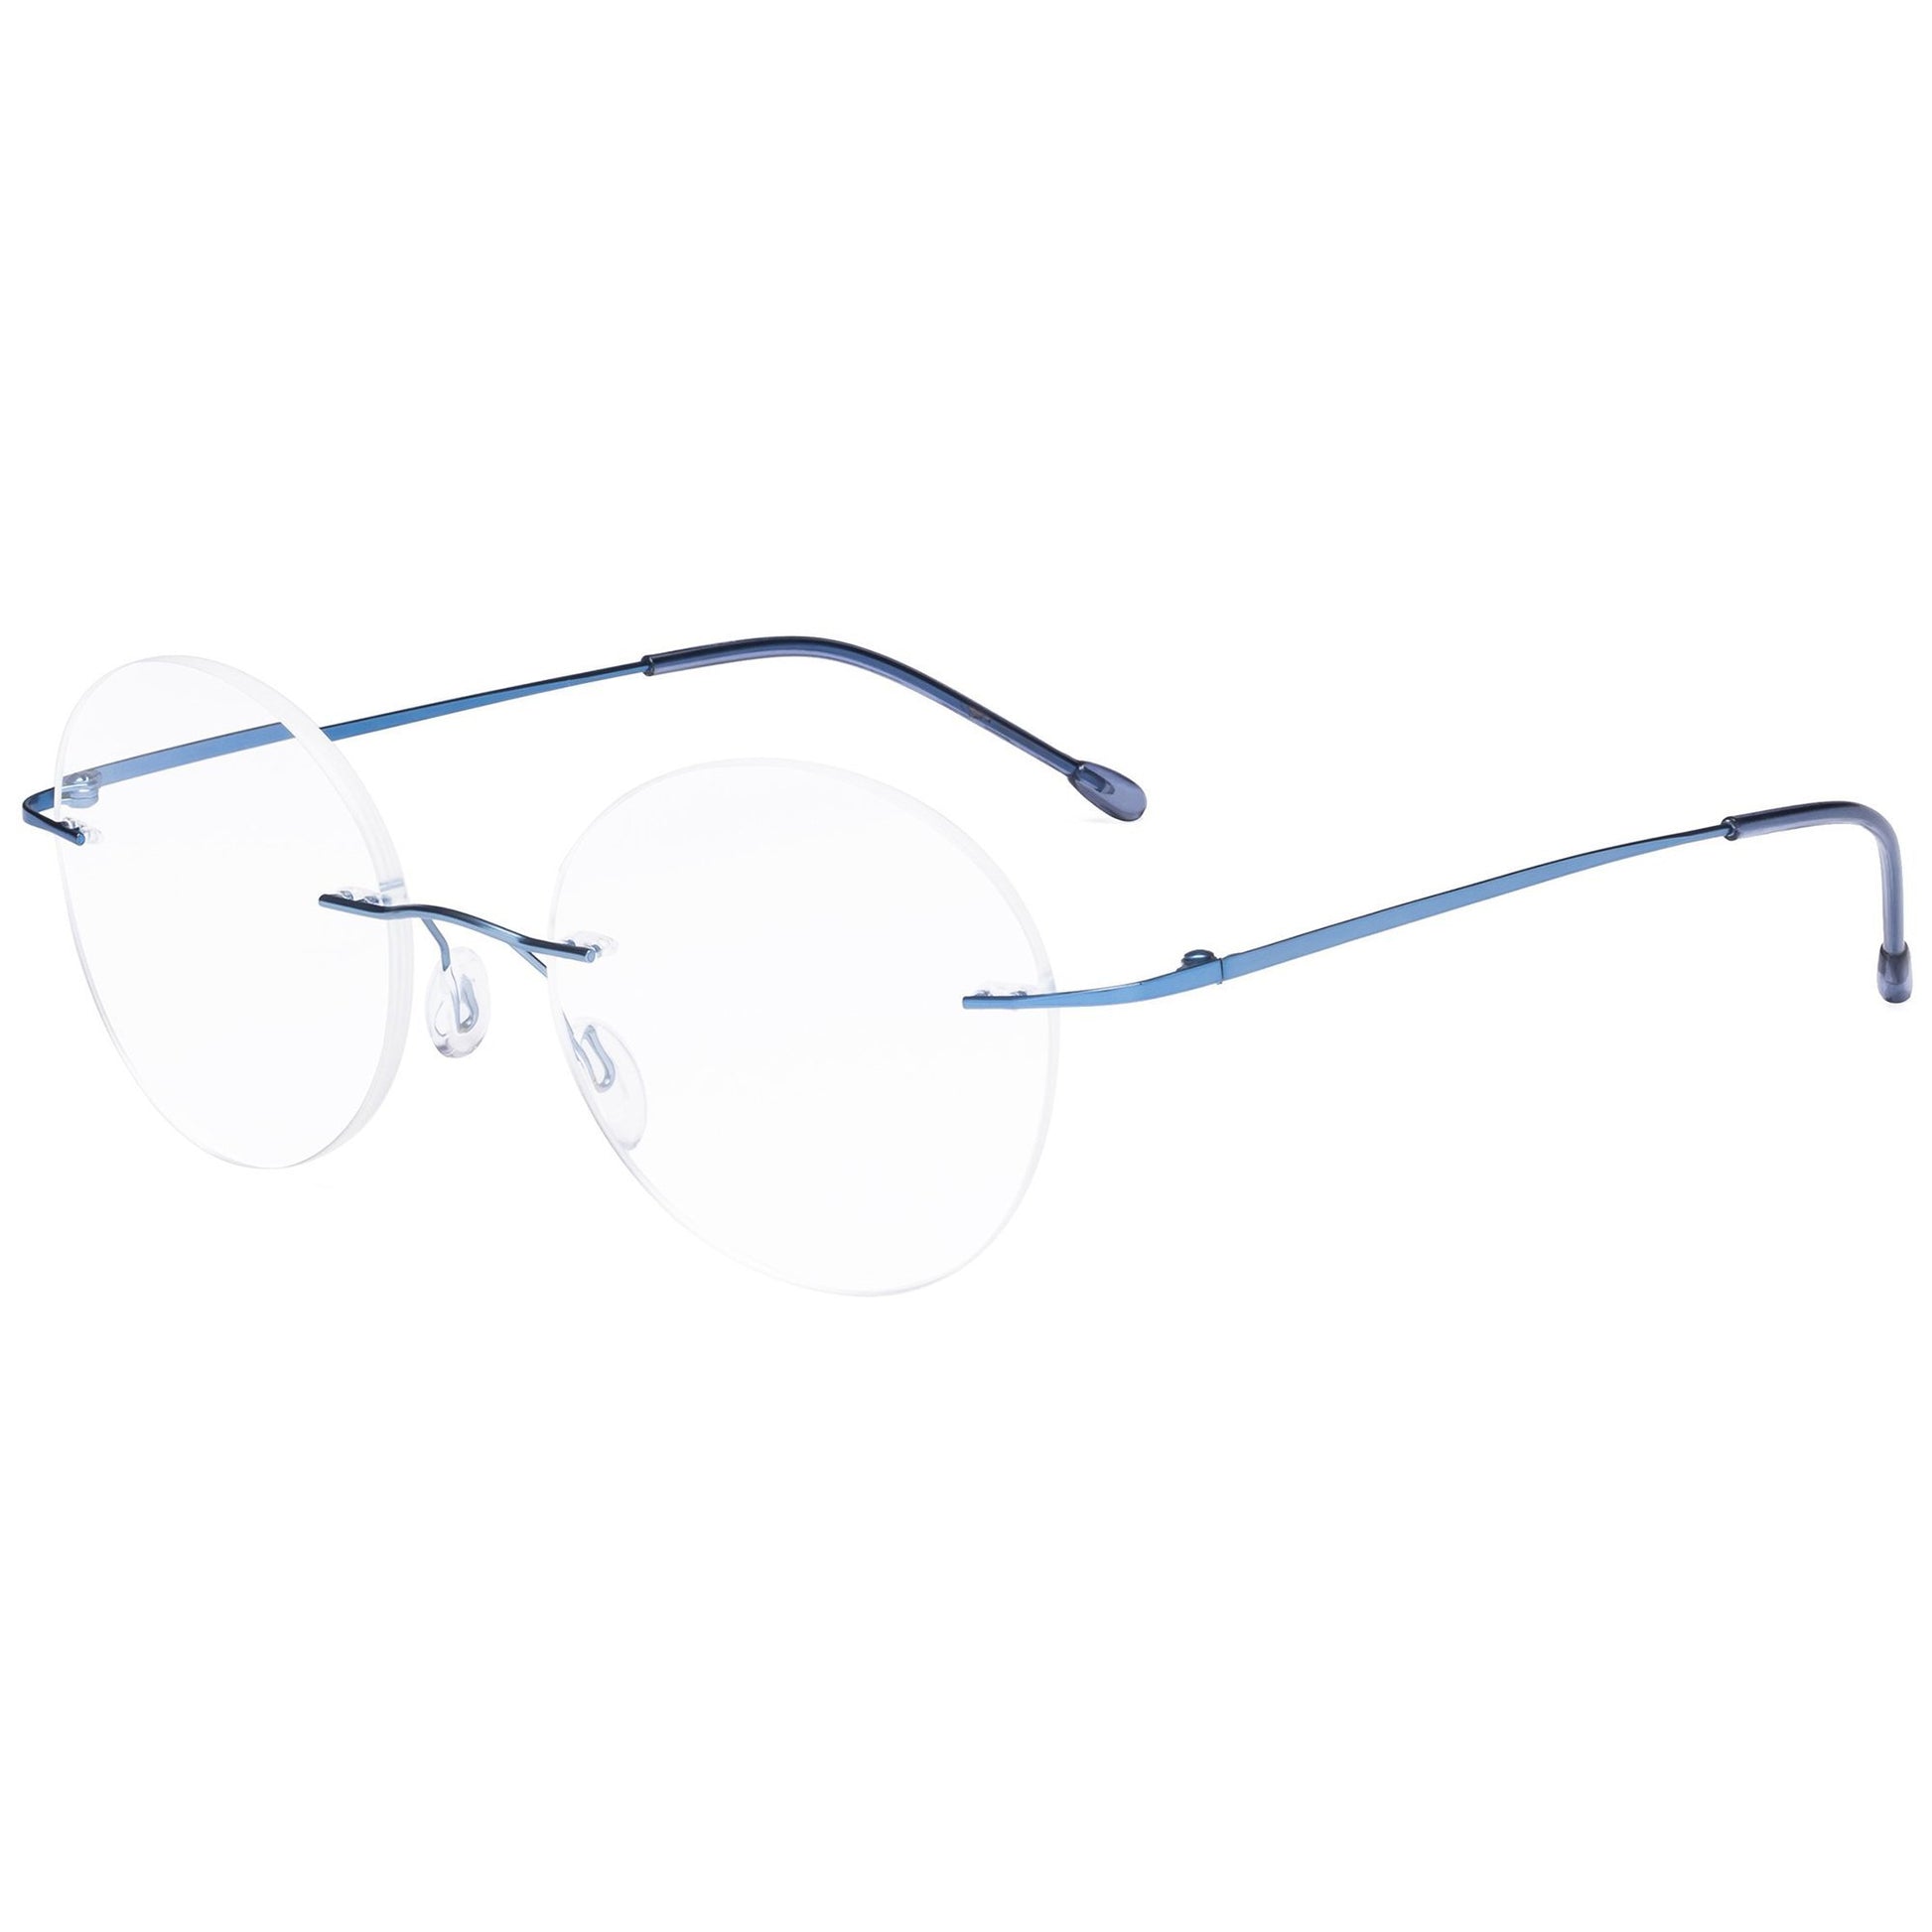 Frameless Reading Glasses Blue RWK9910